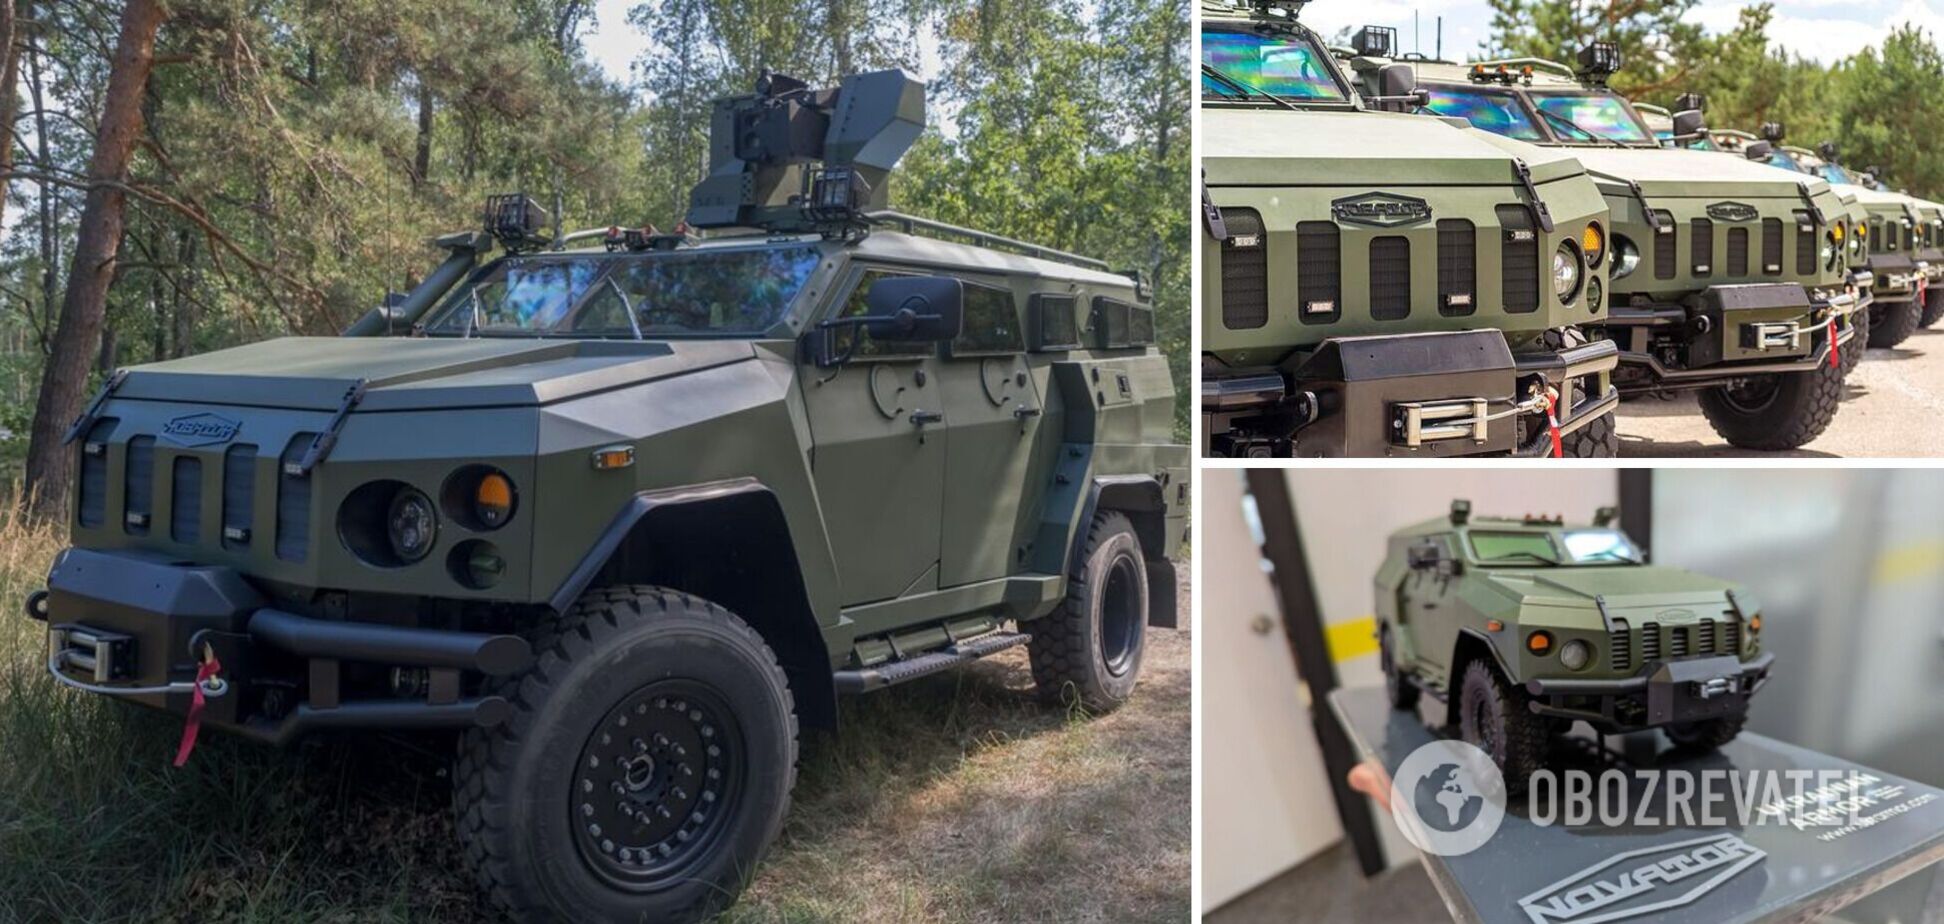  Украинская бронетехника обновила бронированную машину Новатор